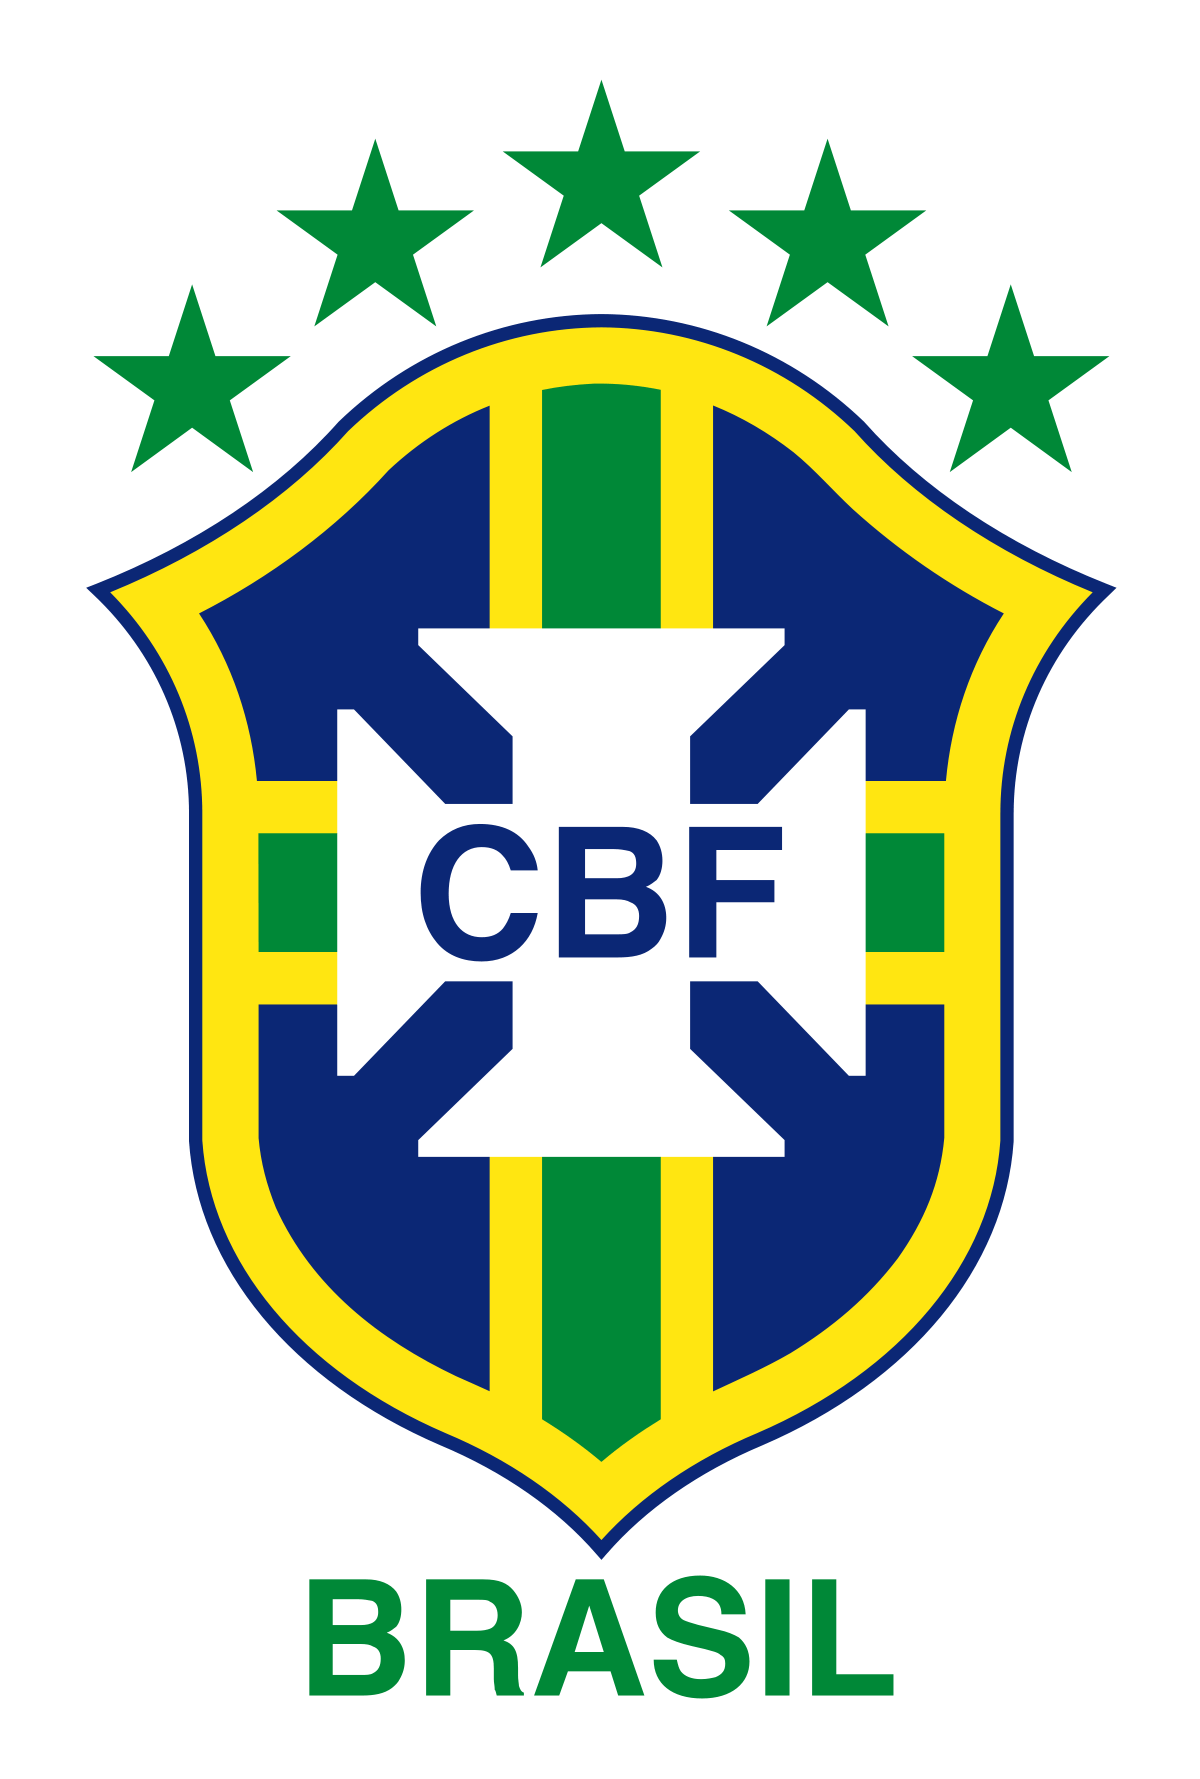 Logo liên đoàn bóng lớn CBF